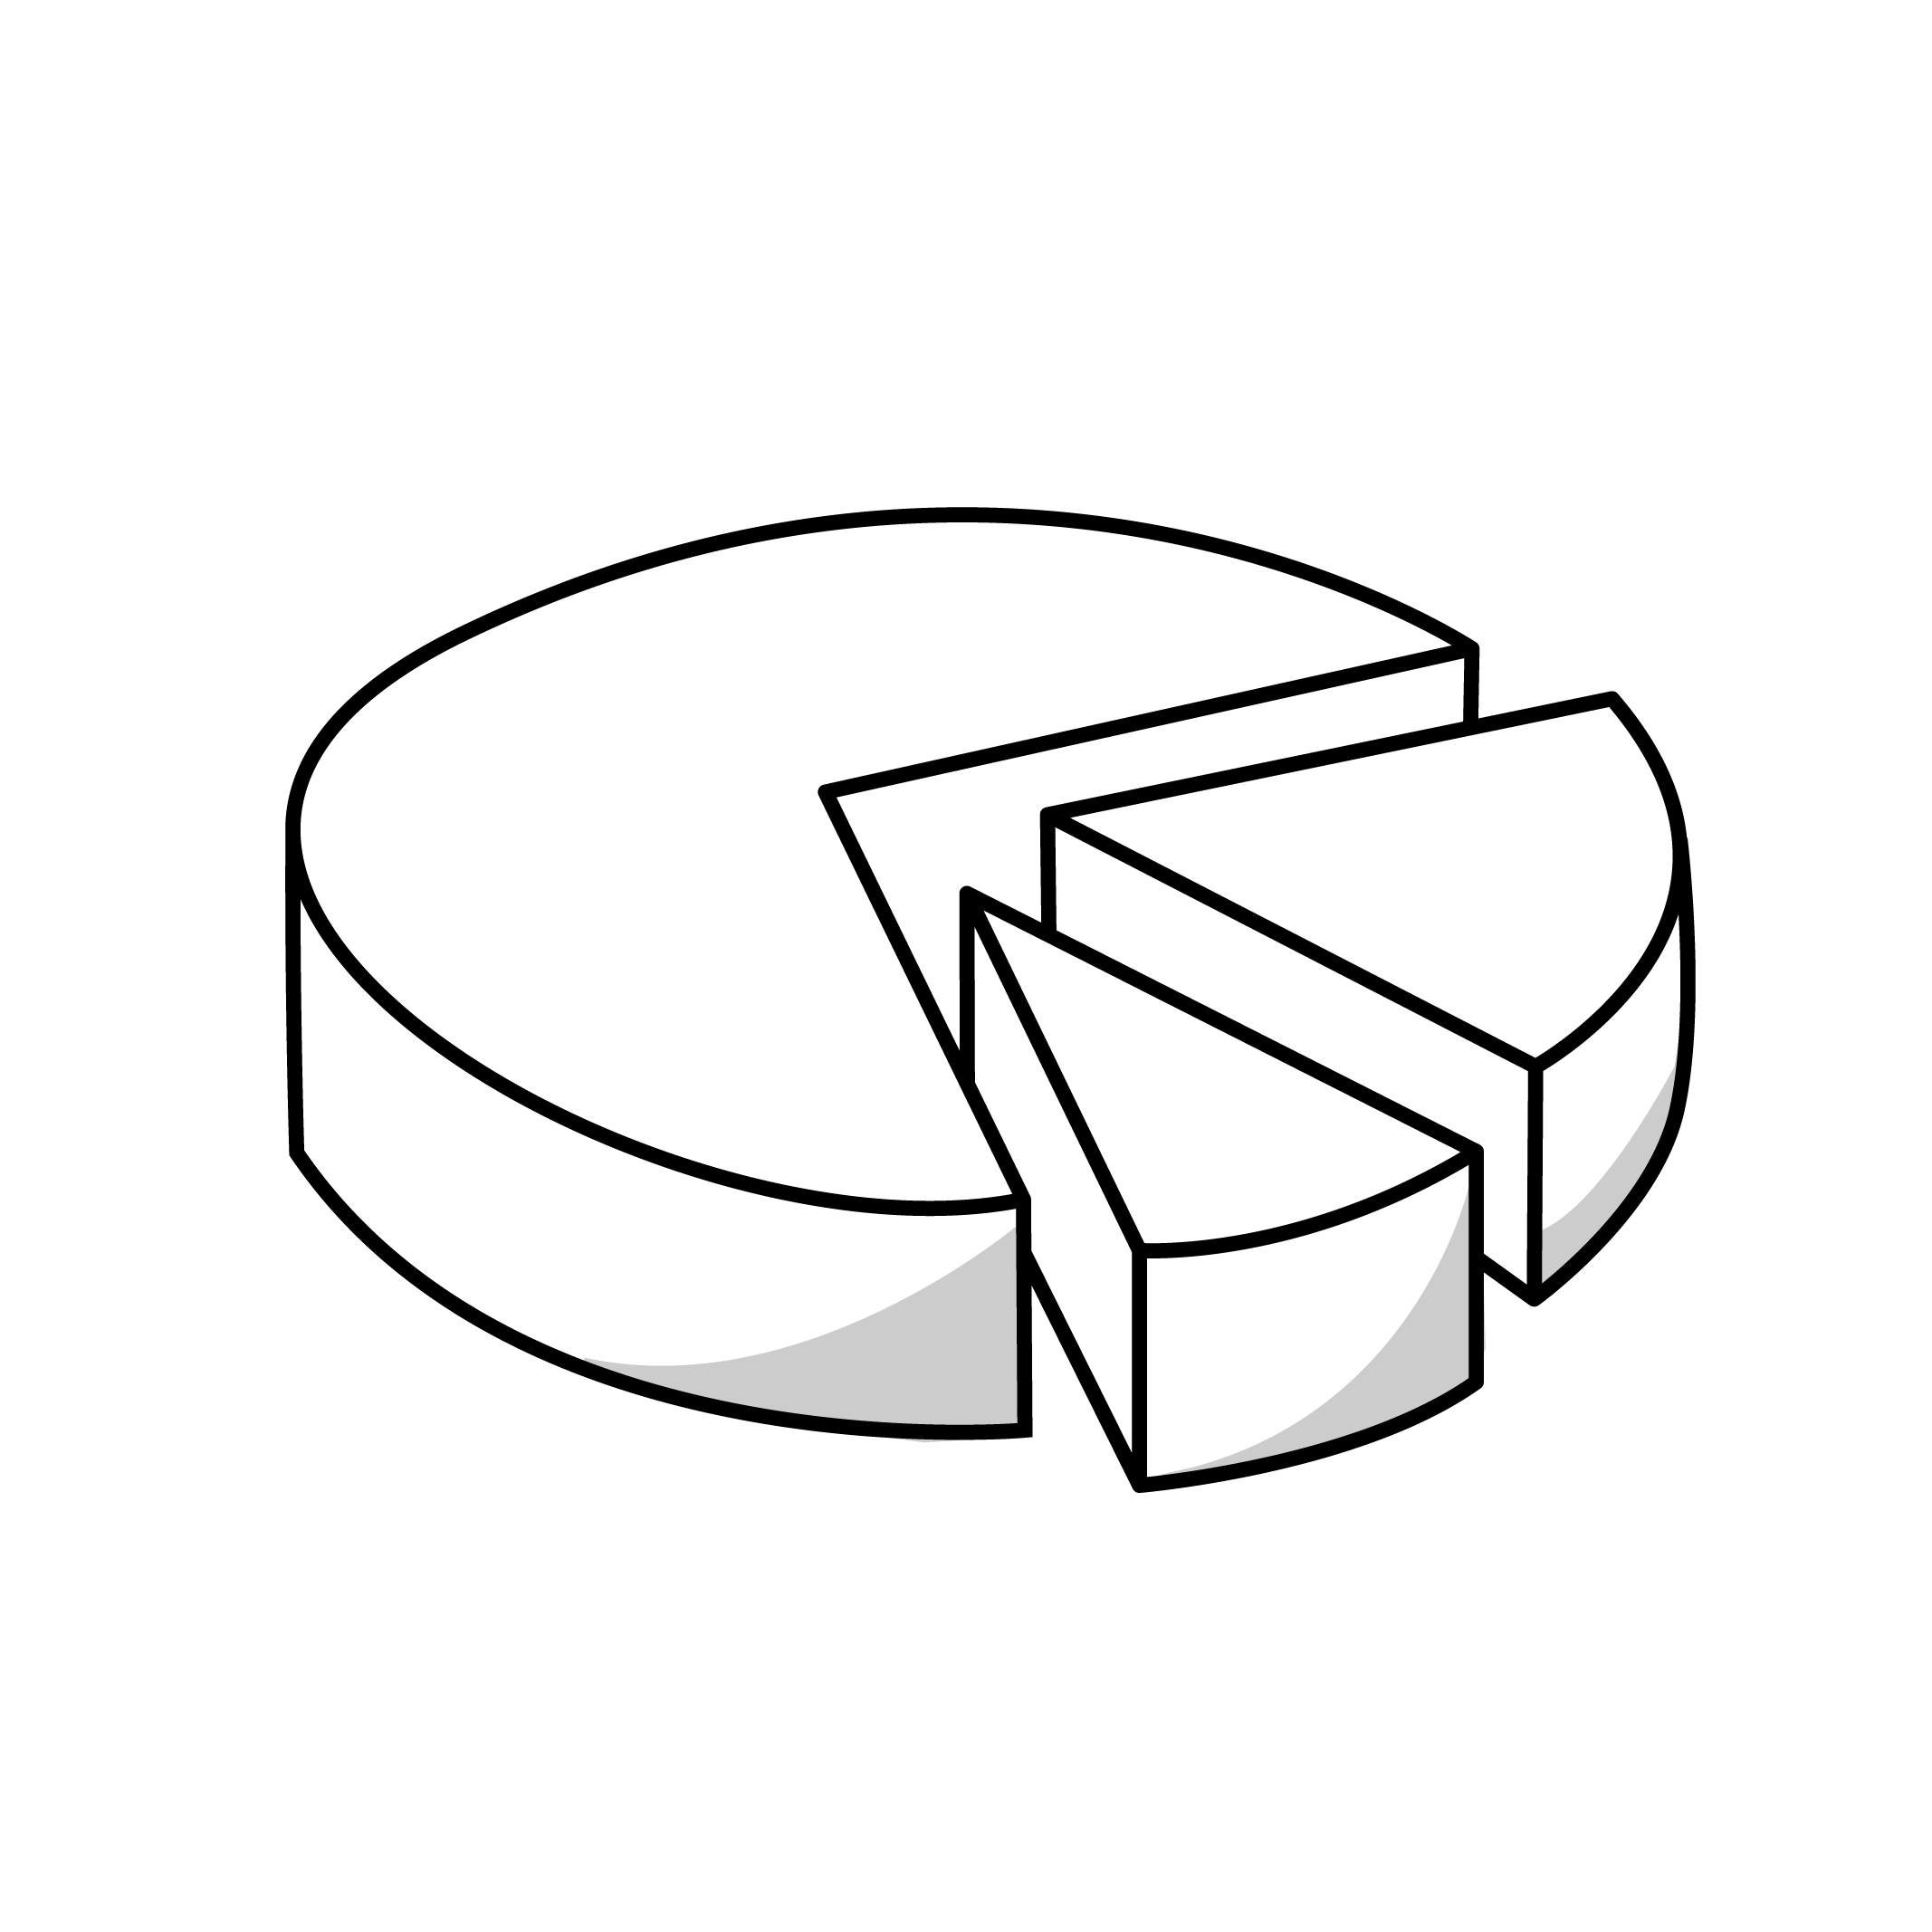 pictogramme noir d'un camembert graphique